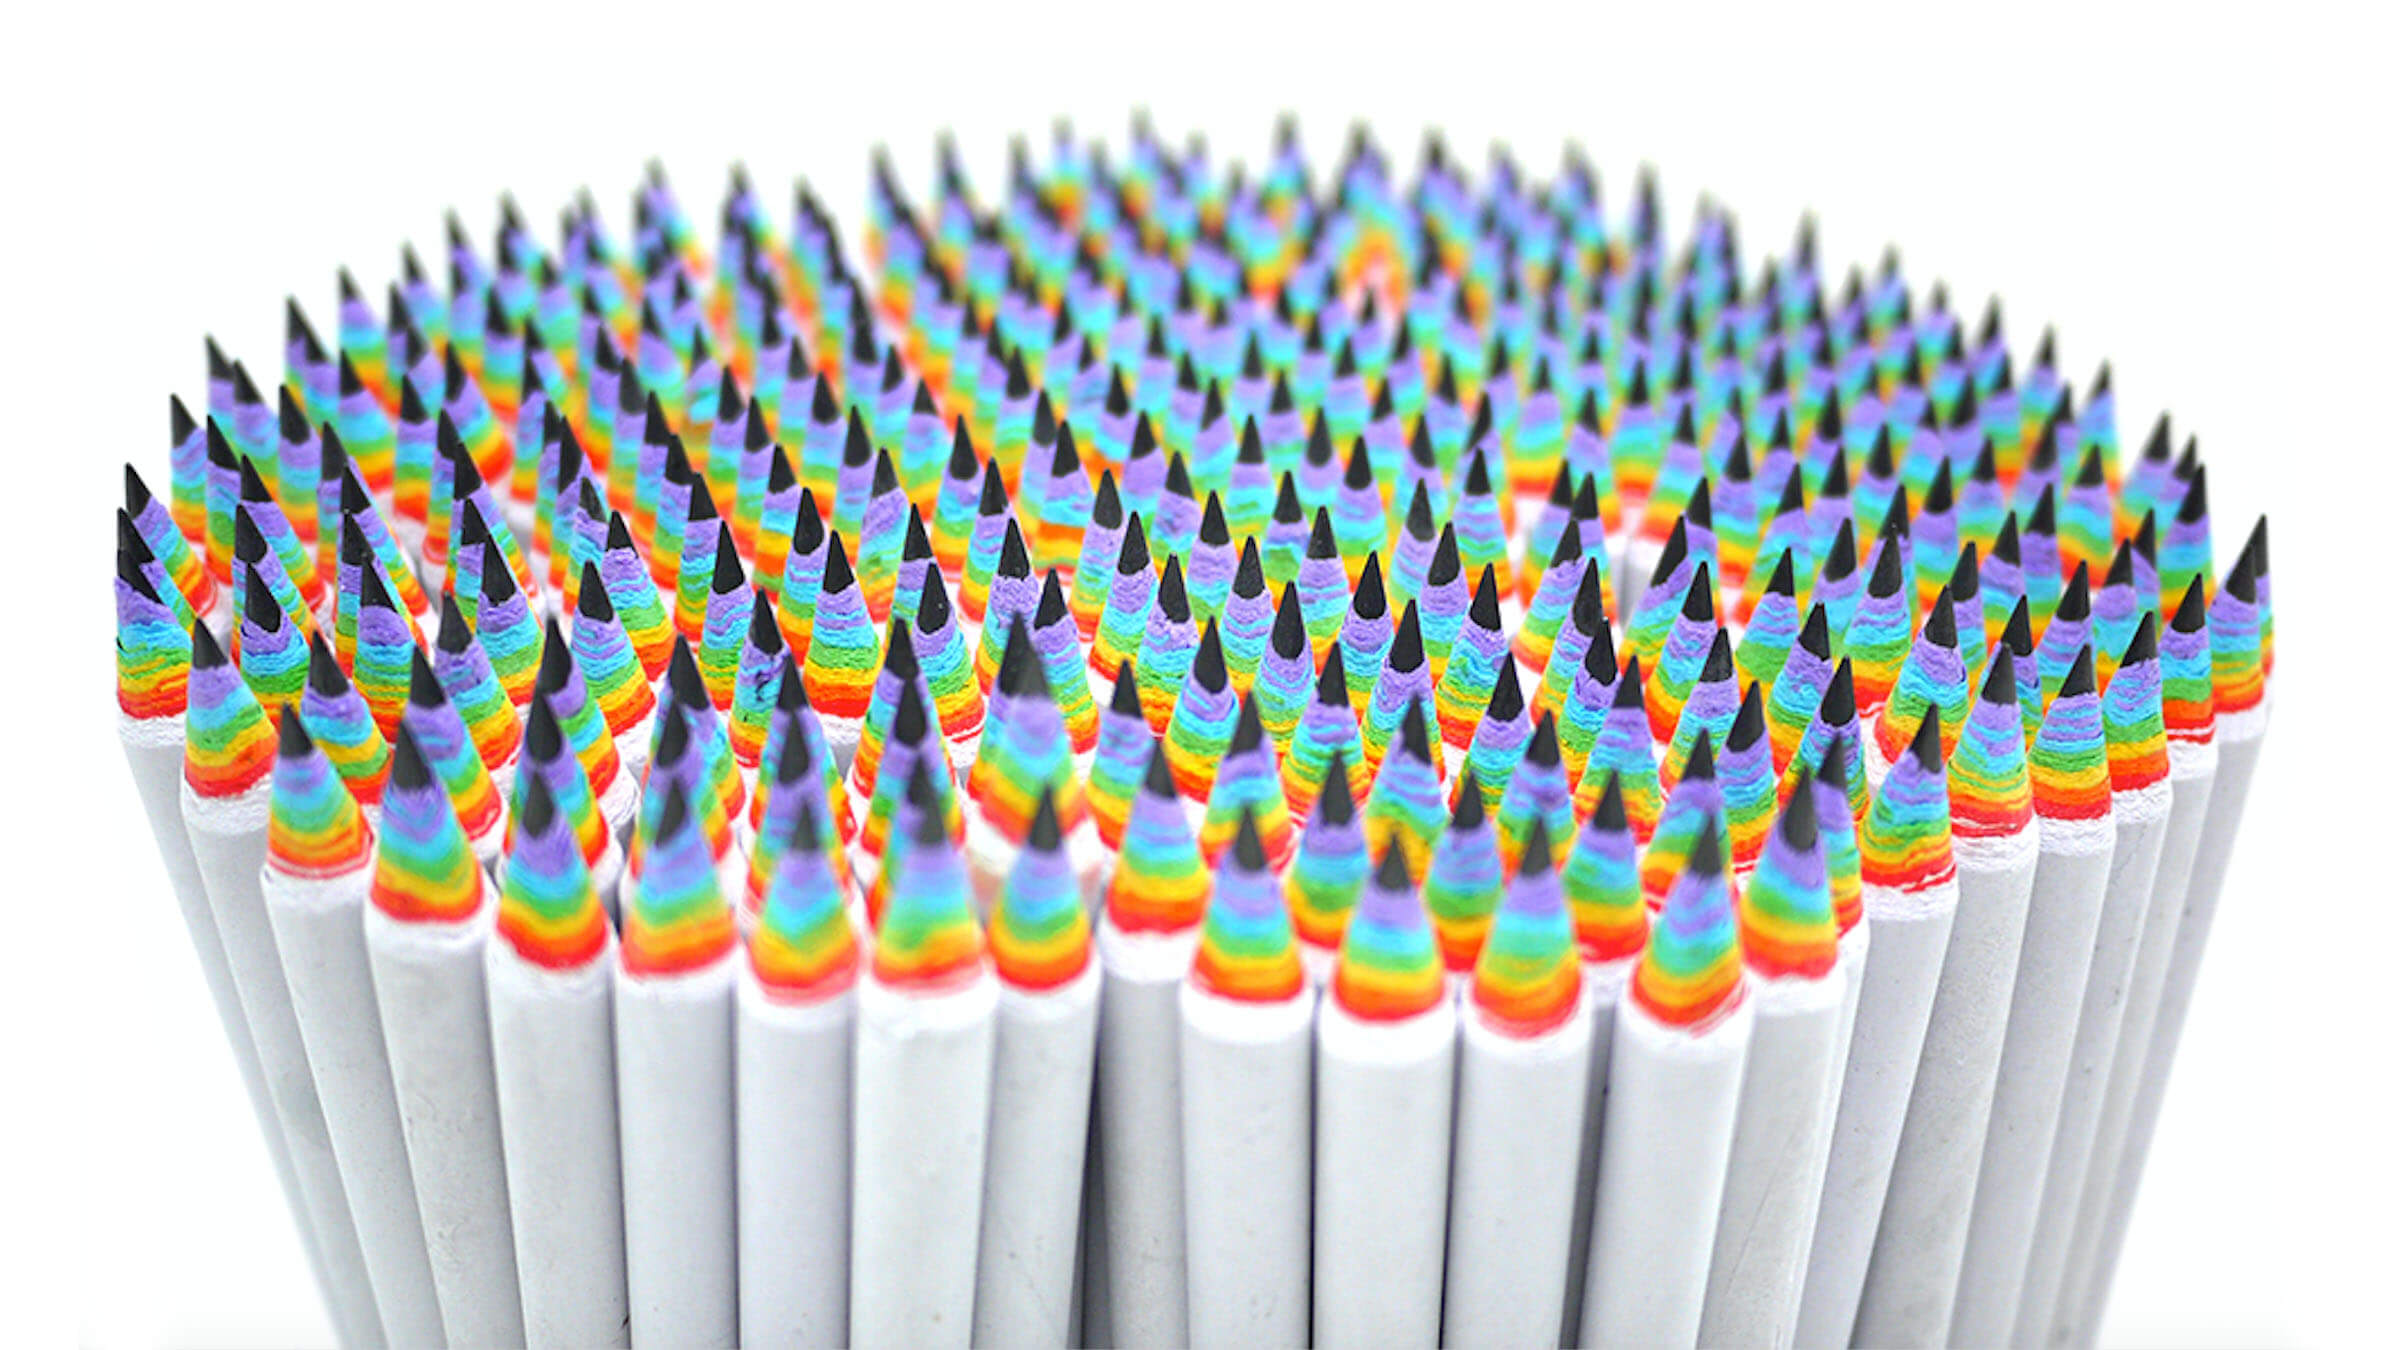 Cool Pencils